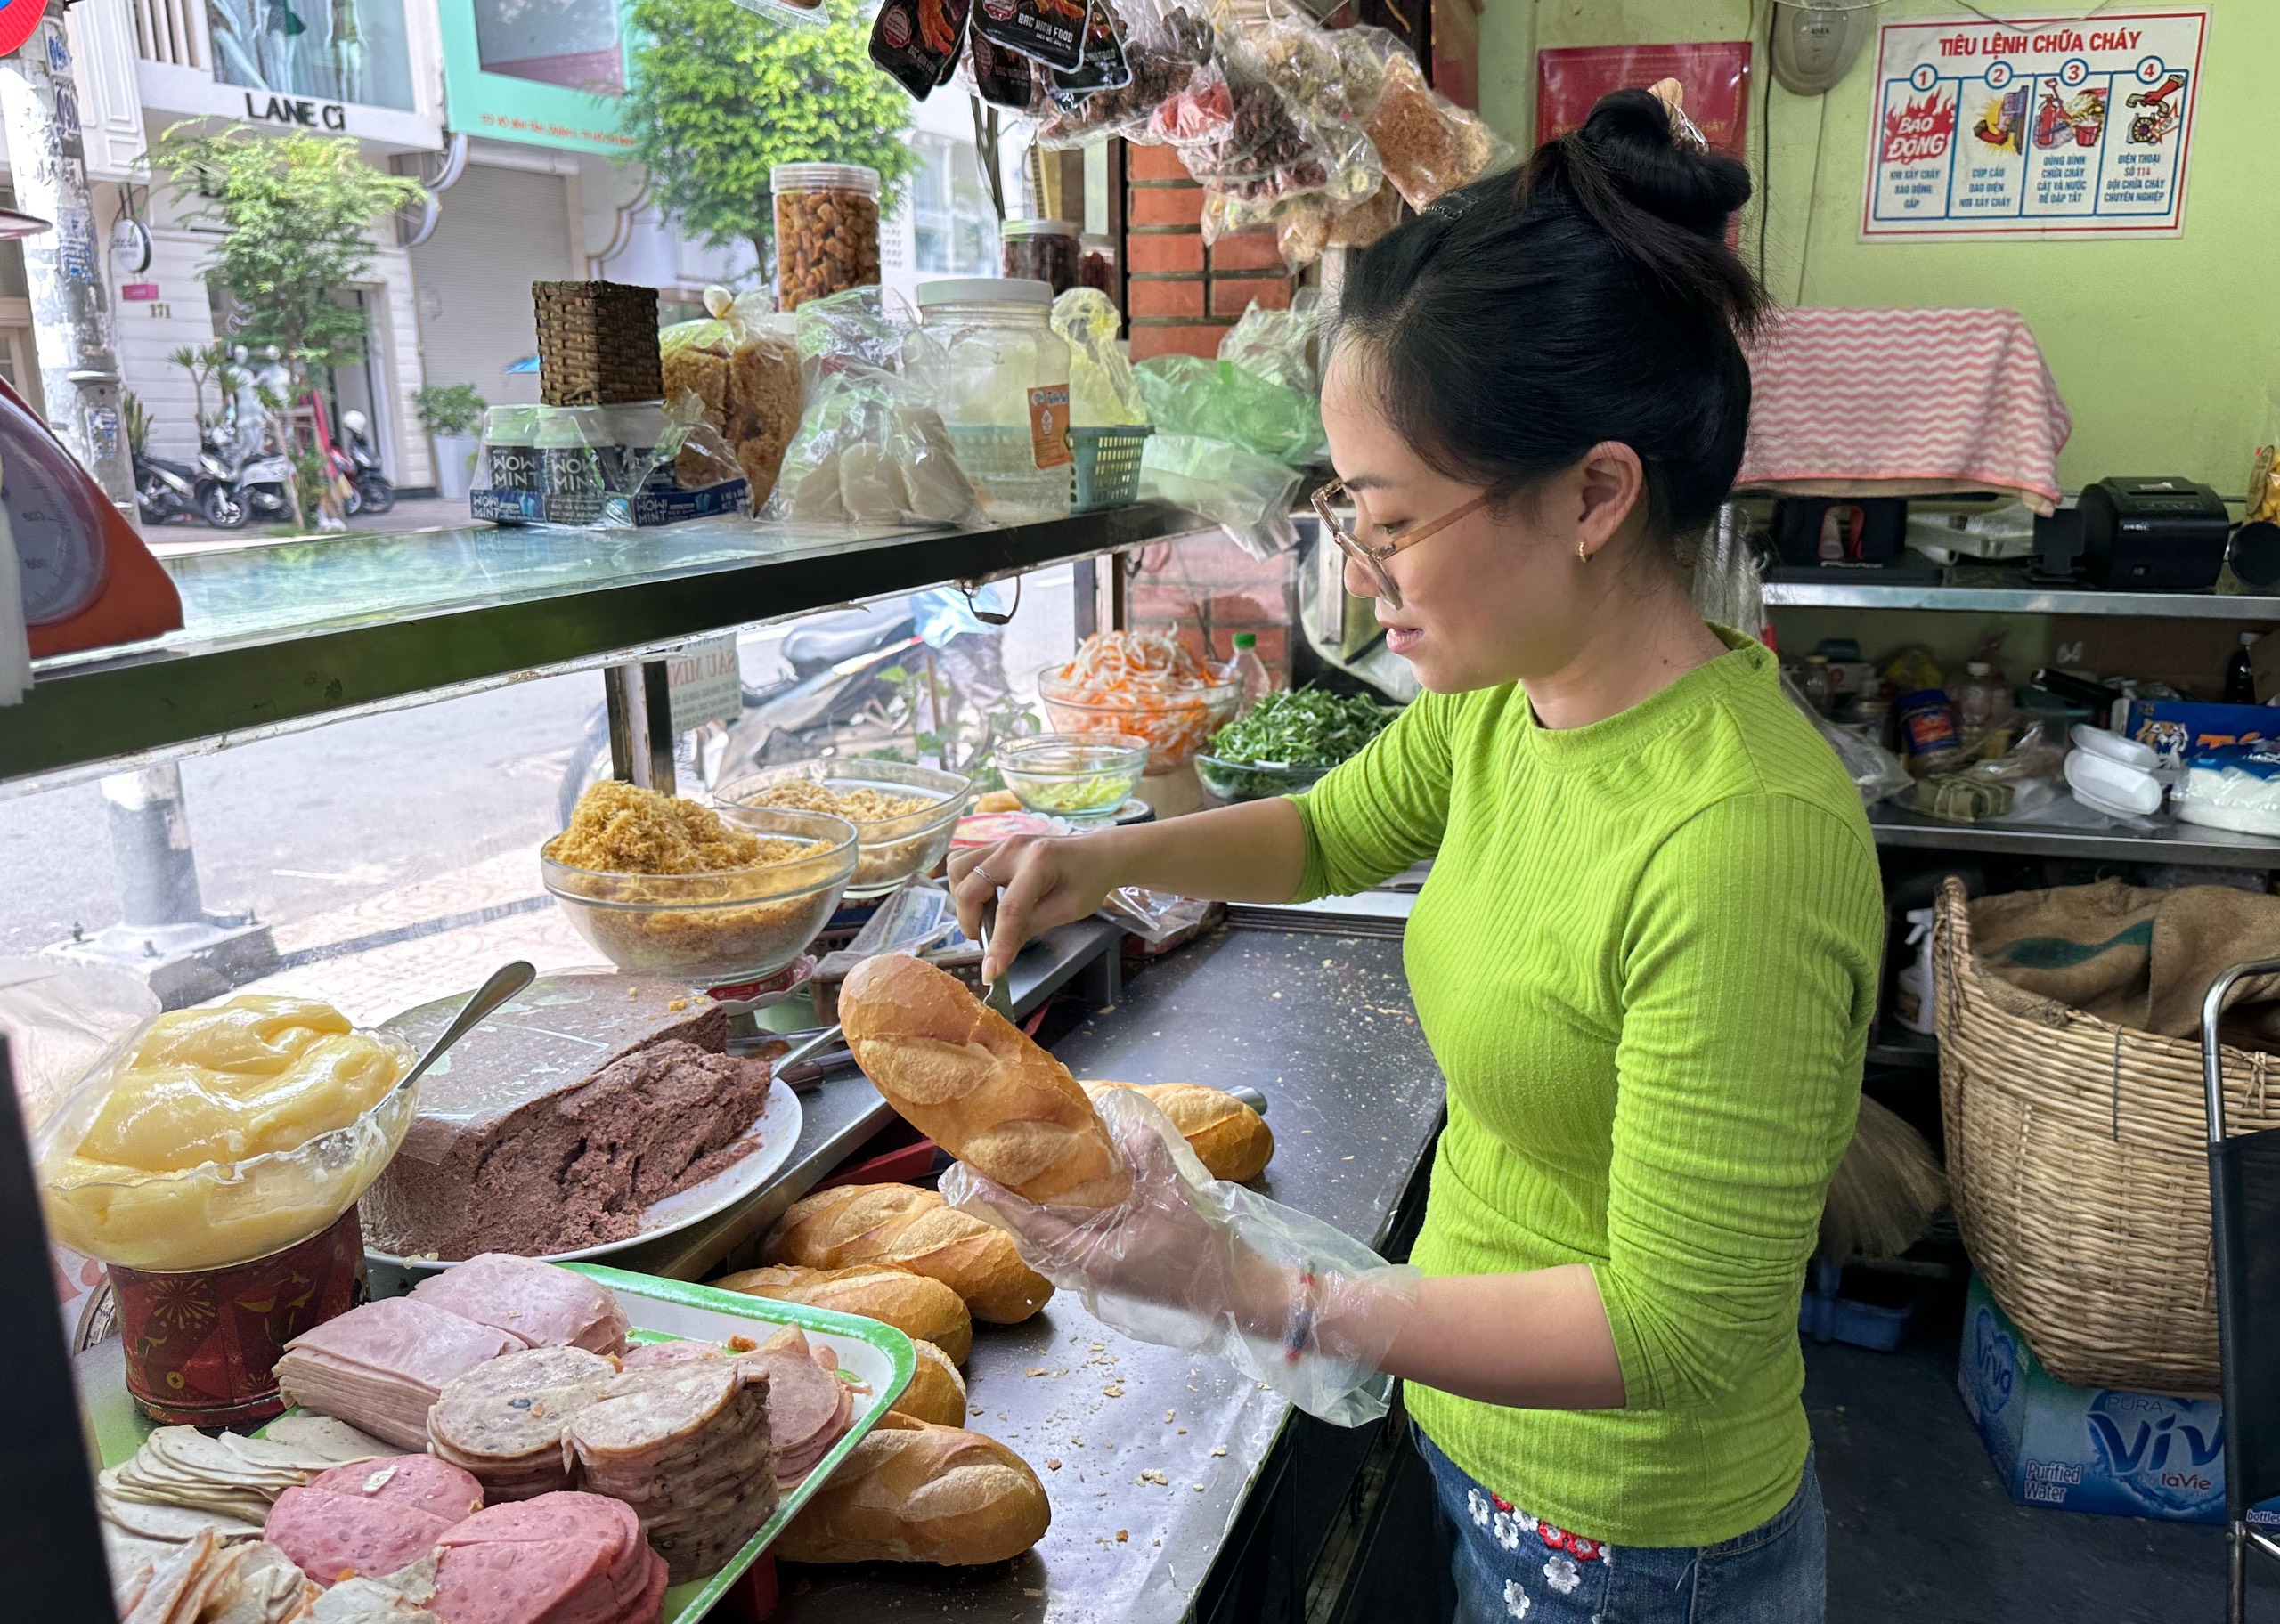 Hôm nay Michelin Guide công bố danh sách quán ăn ở Việt Nam: Bánh mì liệu có đánh rớt như 2023?- Ảnh 4.